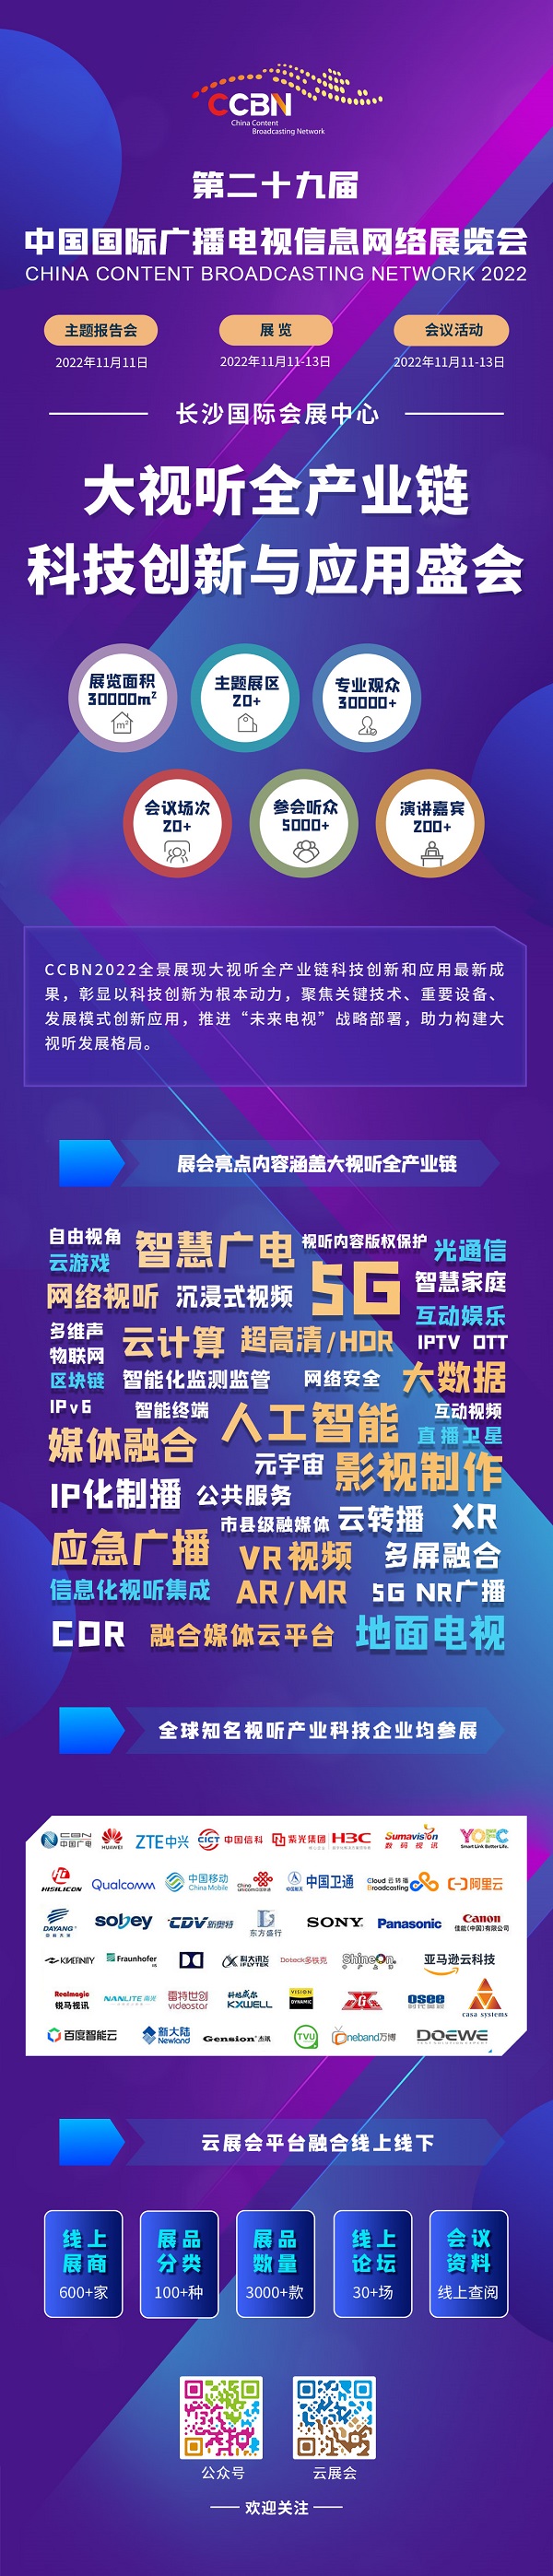 第29届中国国际广播电视信息网络展览会CCBN2022助力行业新发展